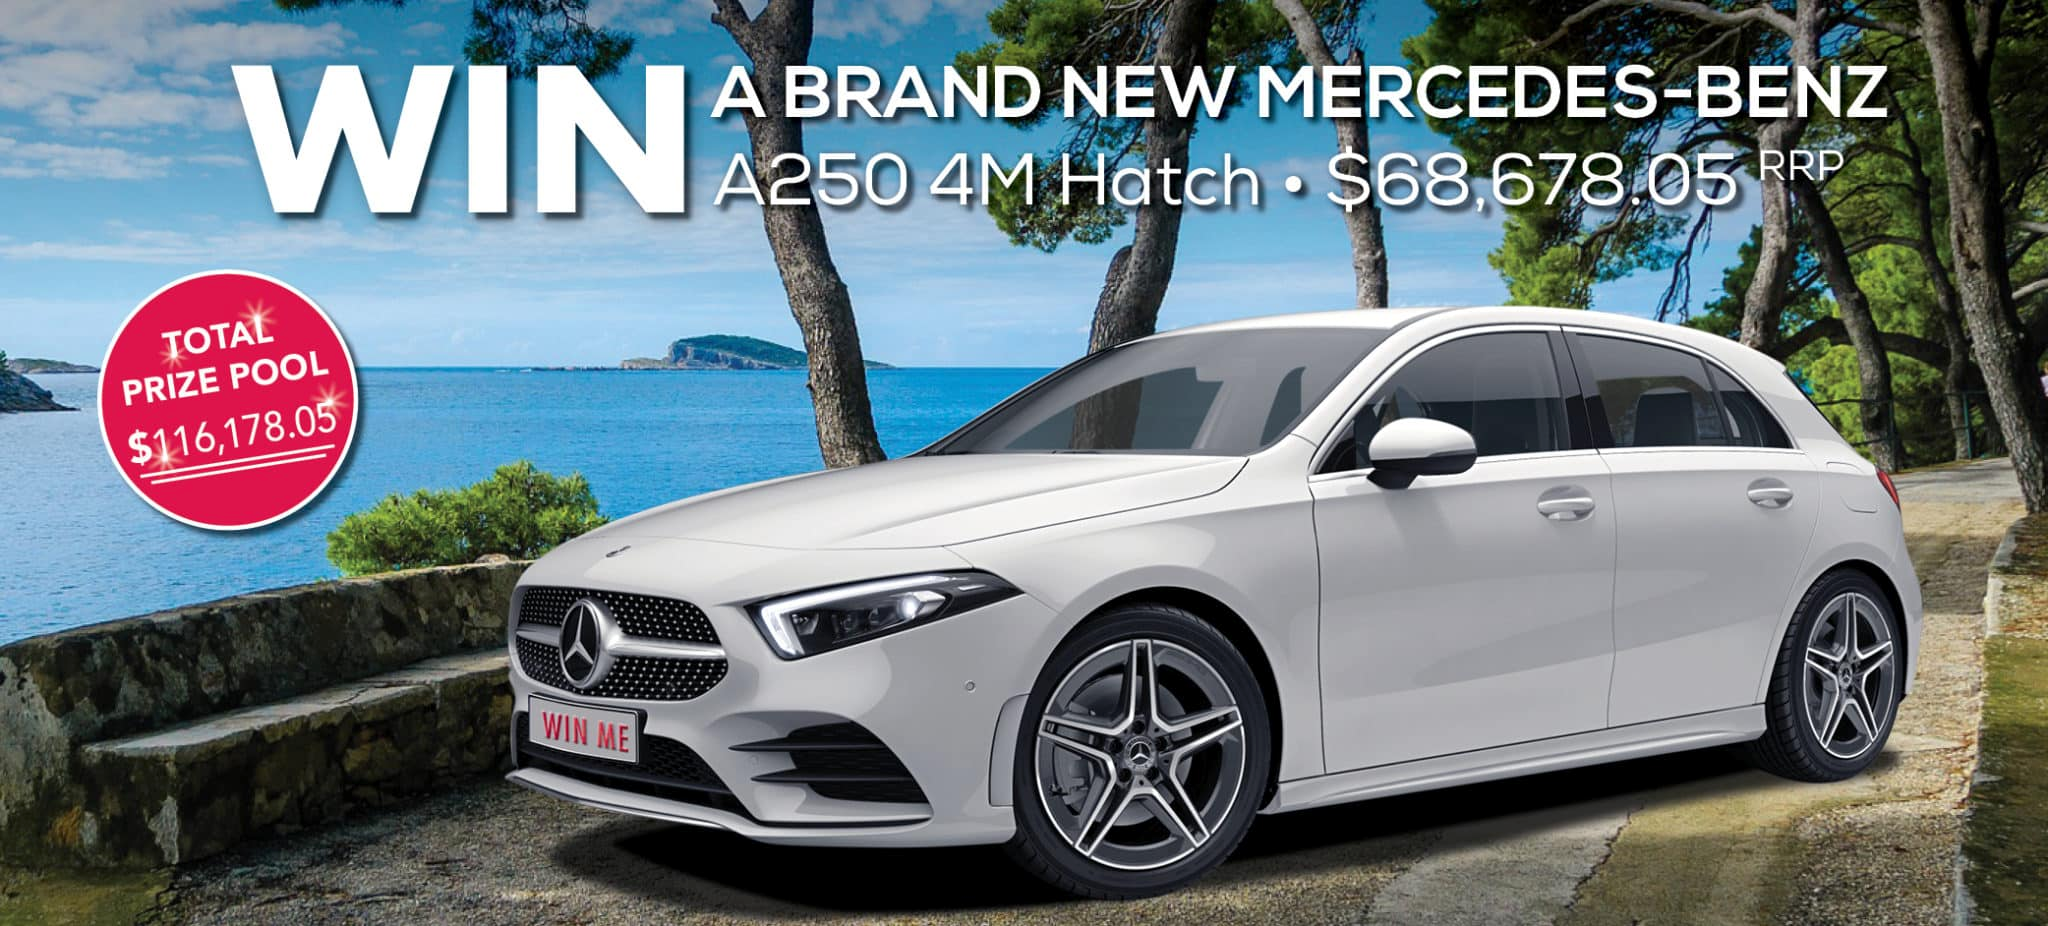 Win a Brand New Mercedes-Benz A250 4M Hatch